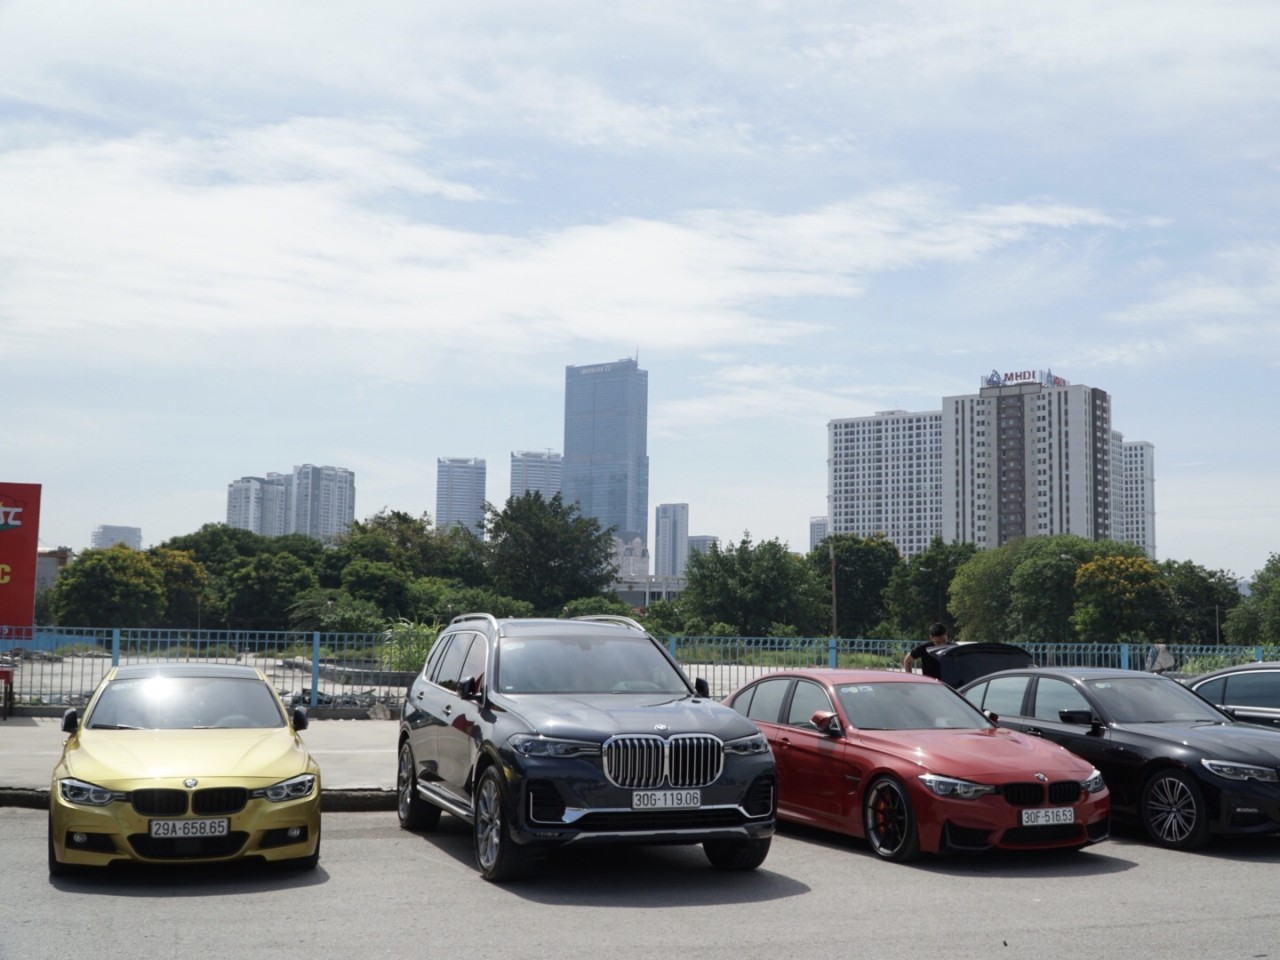 BMW Car Club Vietnam chính thức đi vào hoạt động